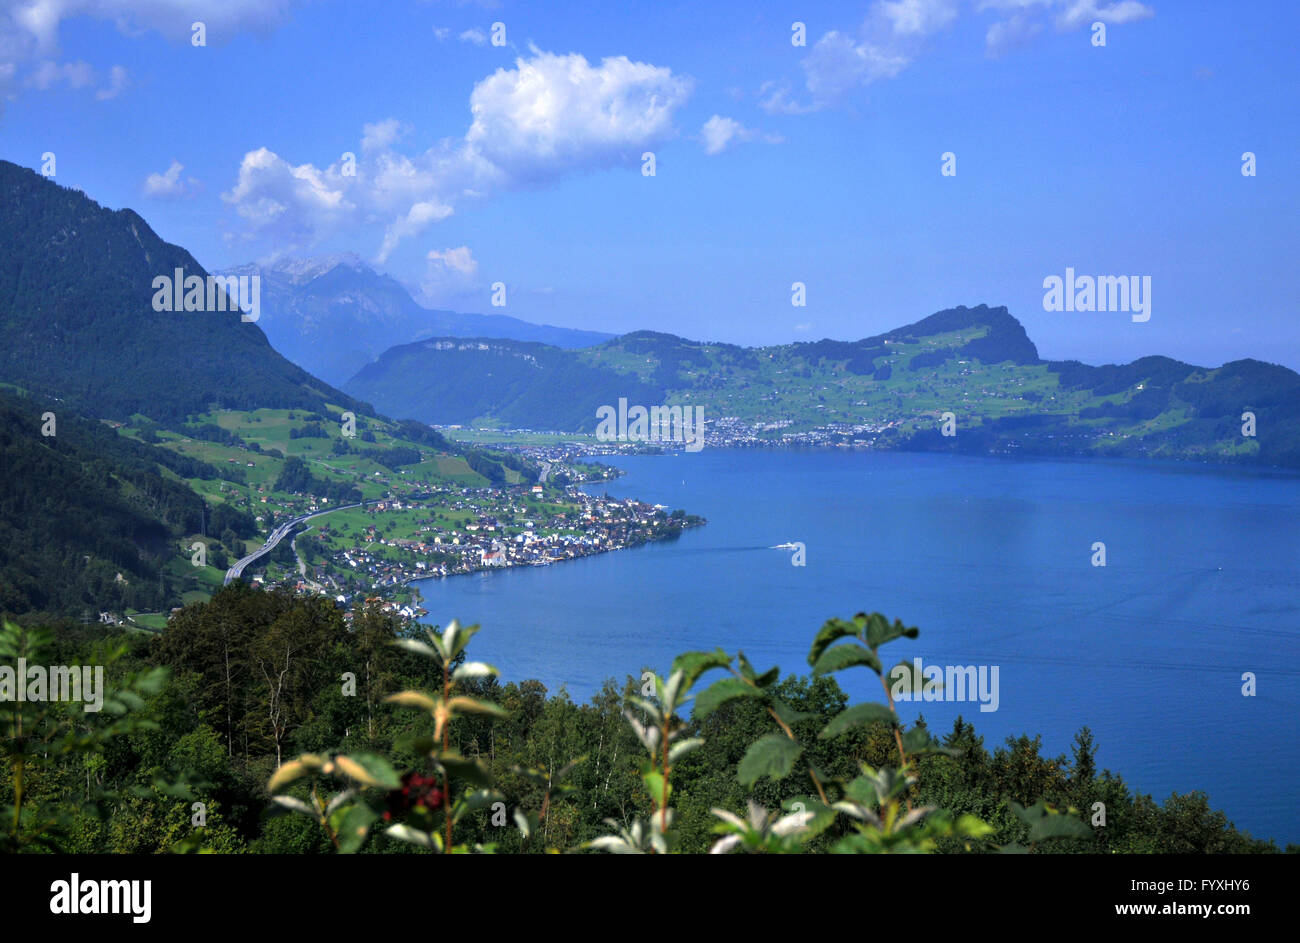 Lake Lucerne, Mount Burgenstock, Beckenried, Nidwalden, Switzerland / Vierwaldstattersee, Vierwaldstättersee, Lake of the Four Forested Cantons, Bürgenstock Stock Photo